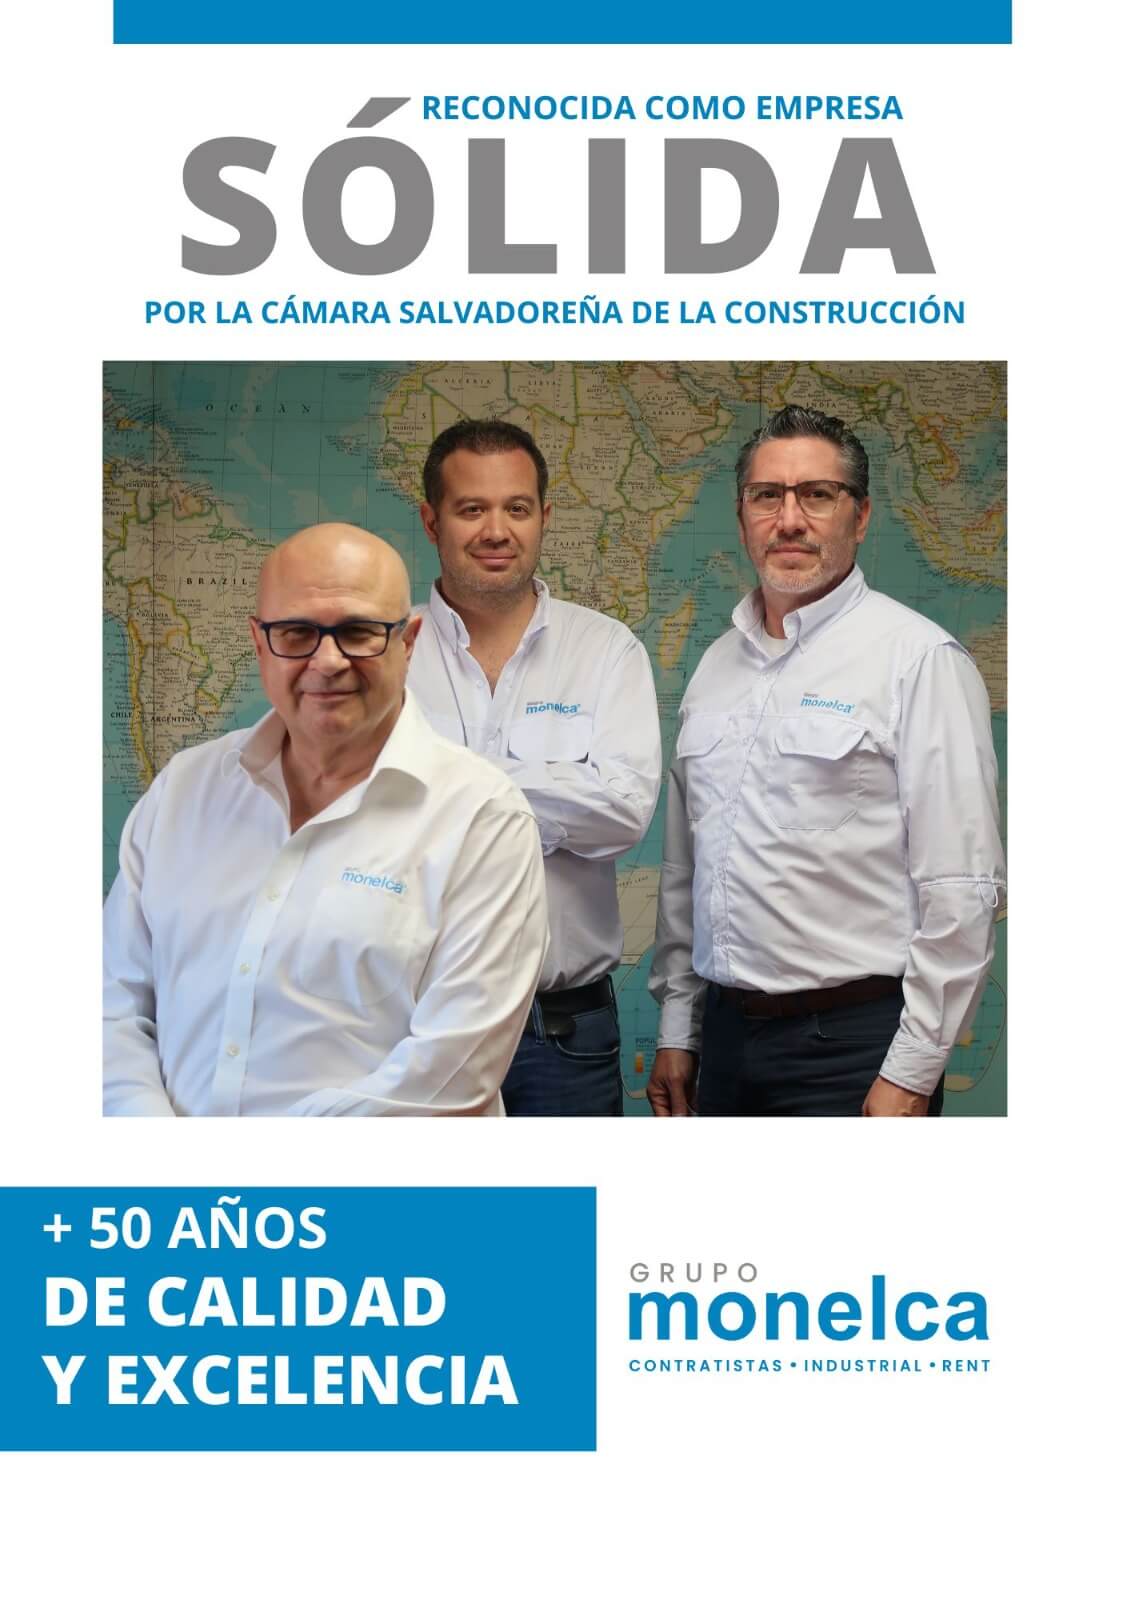 Grupo Monelca: Una empresa sólida con más de 50 años de trayectoria